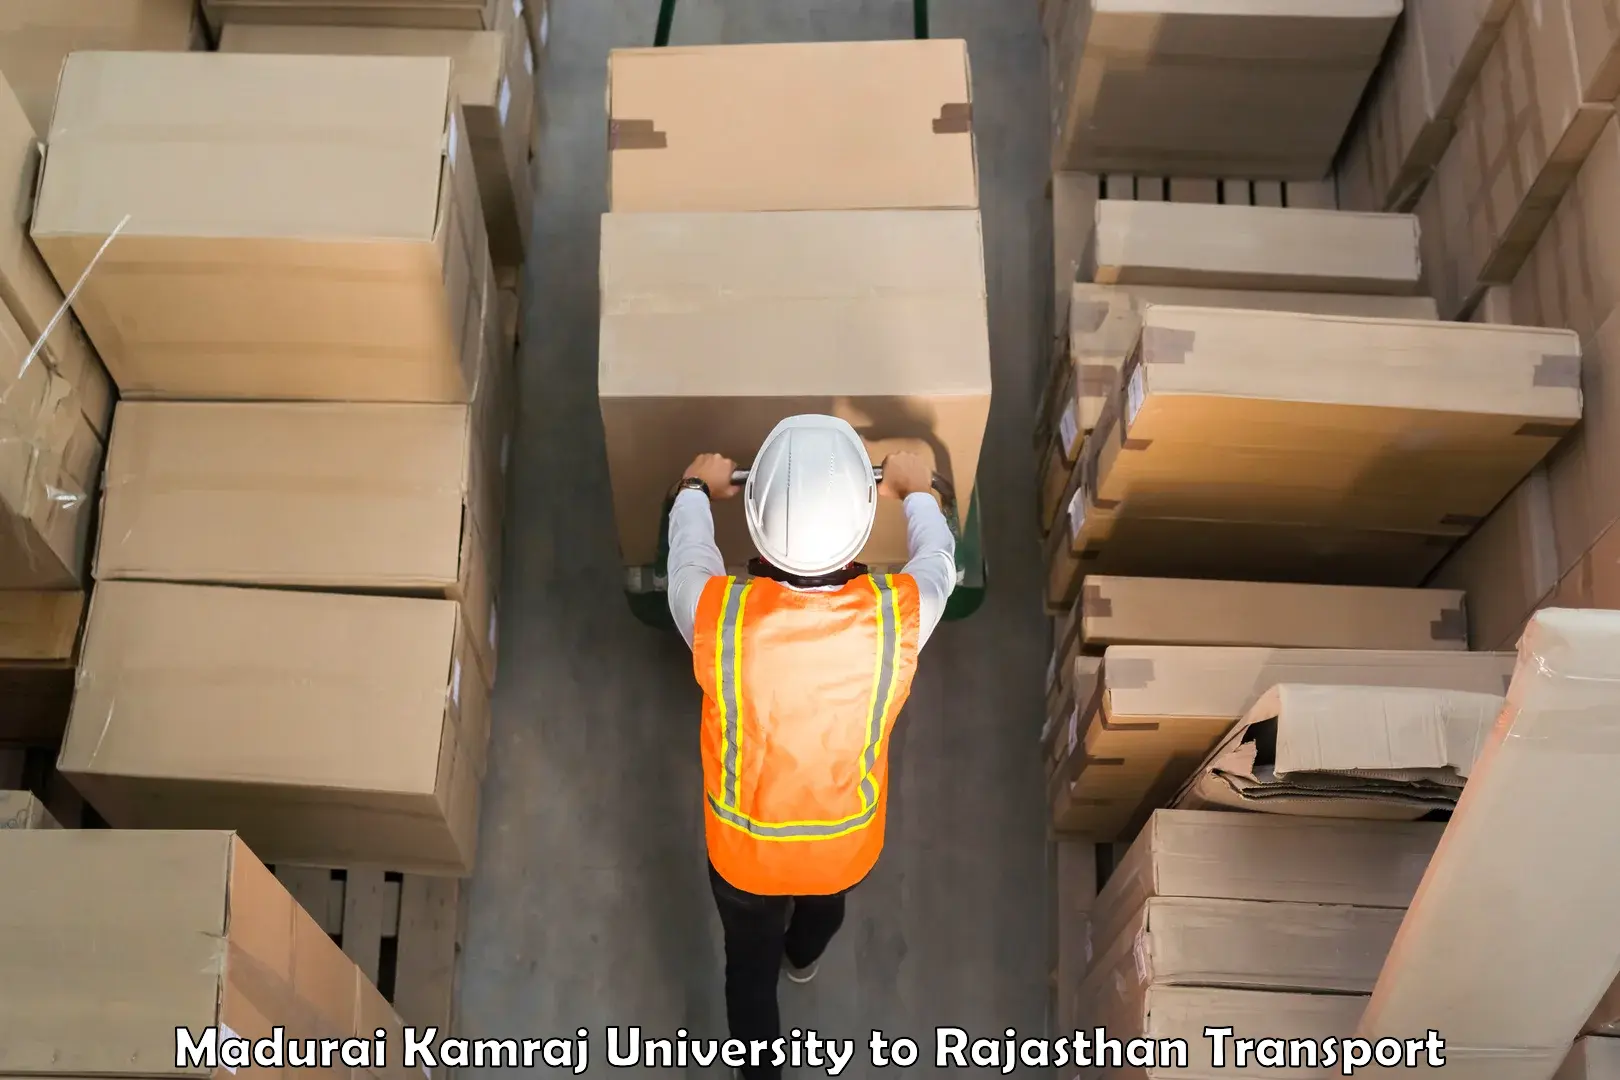 Furniture transport service Madurai Kamraj University to Anupgarh